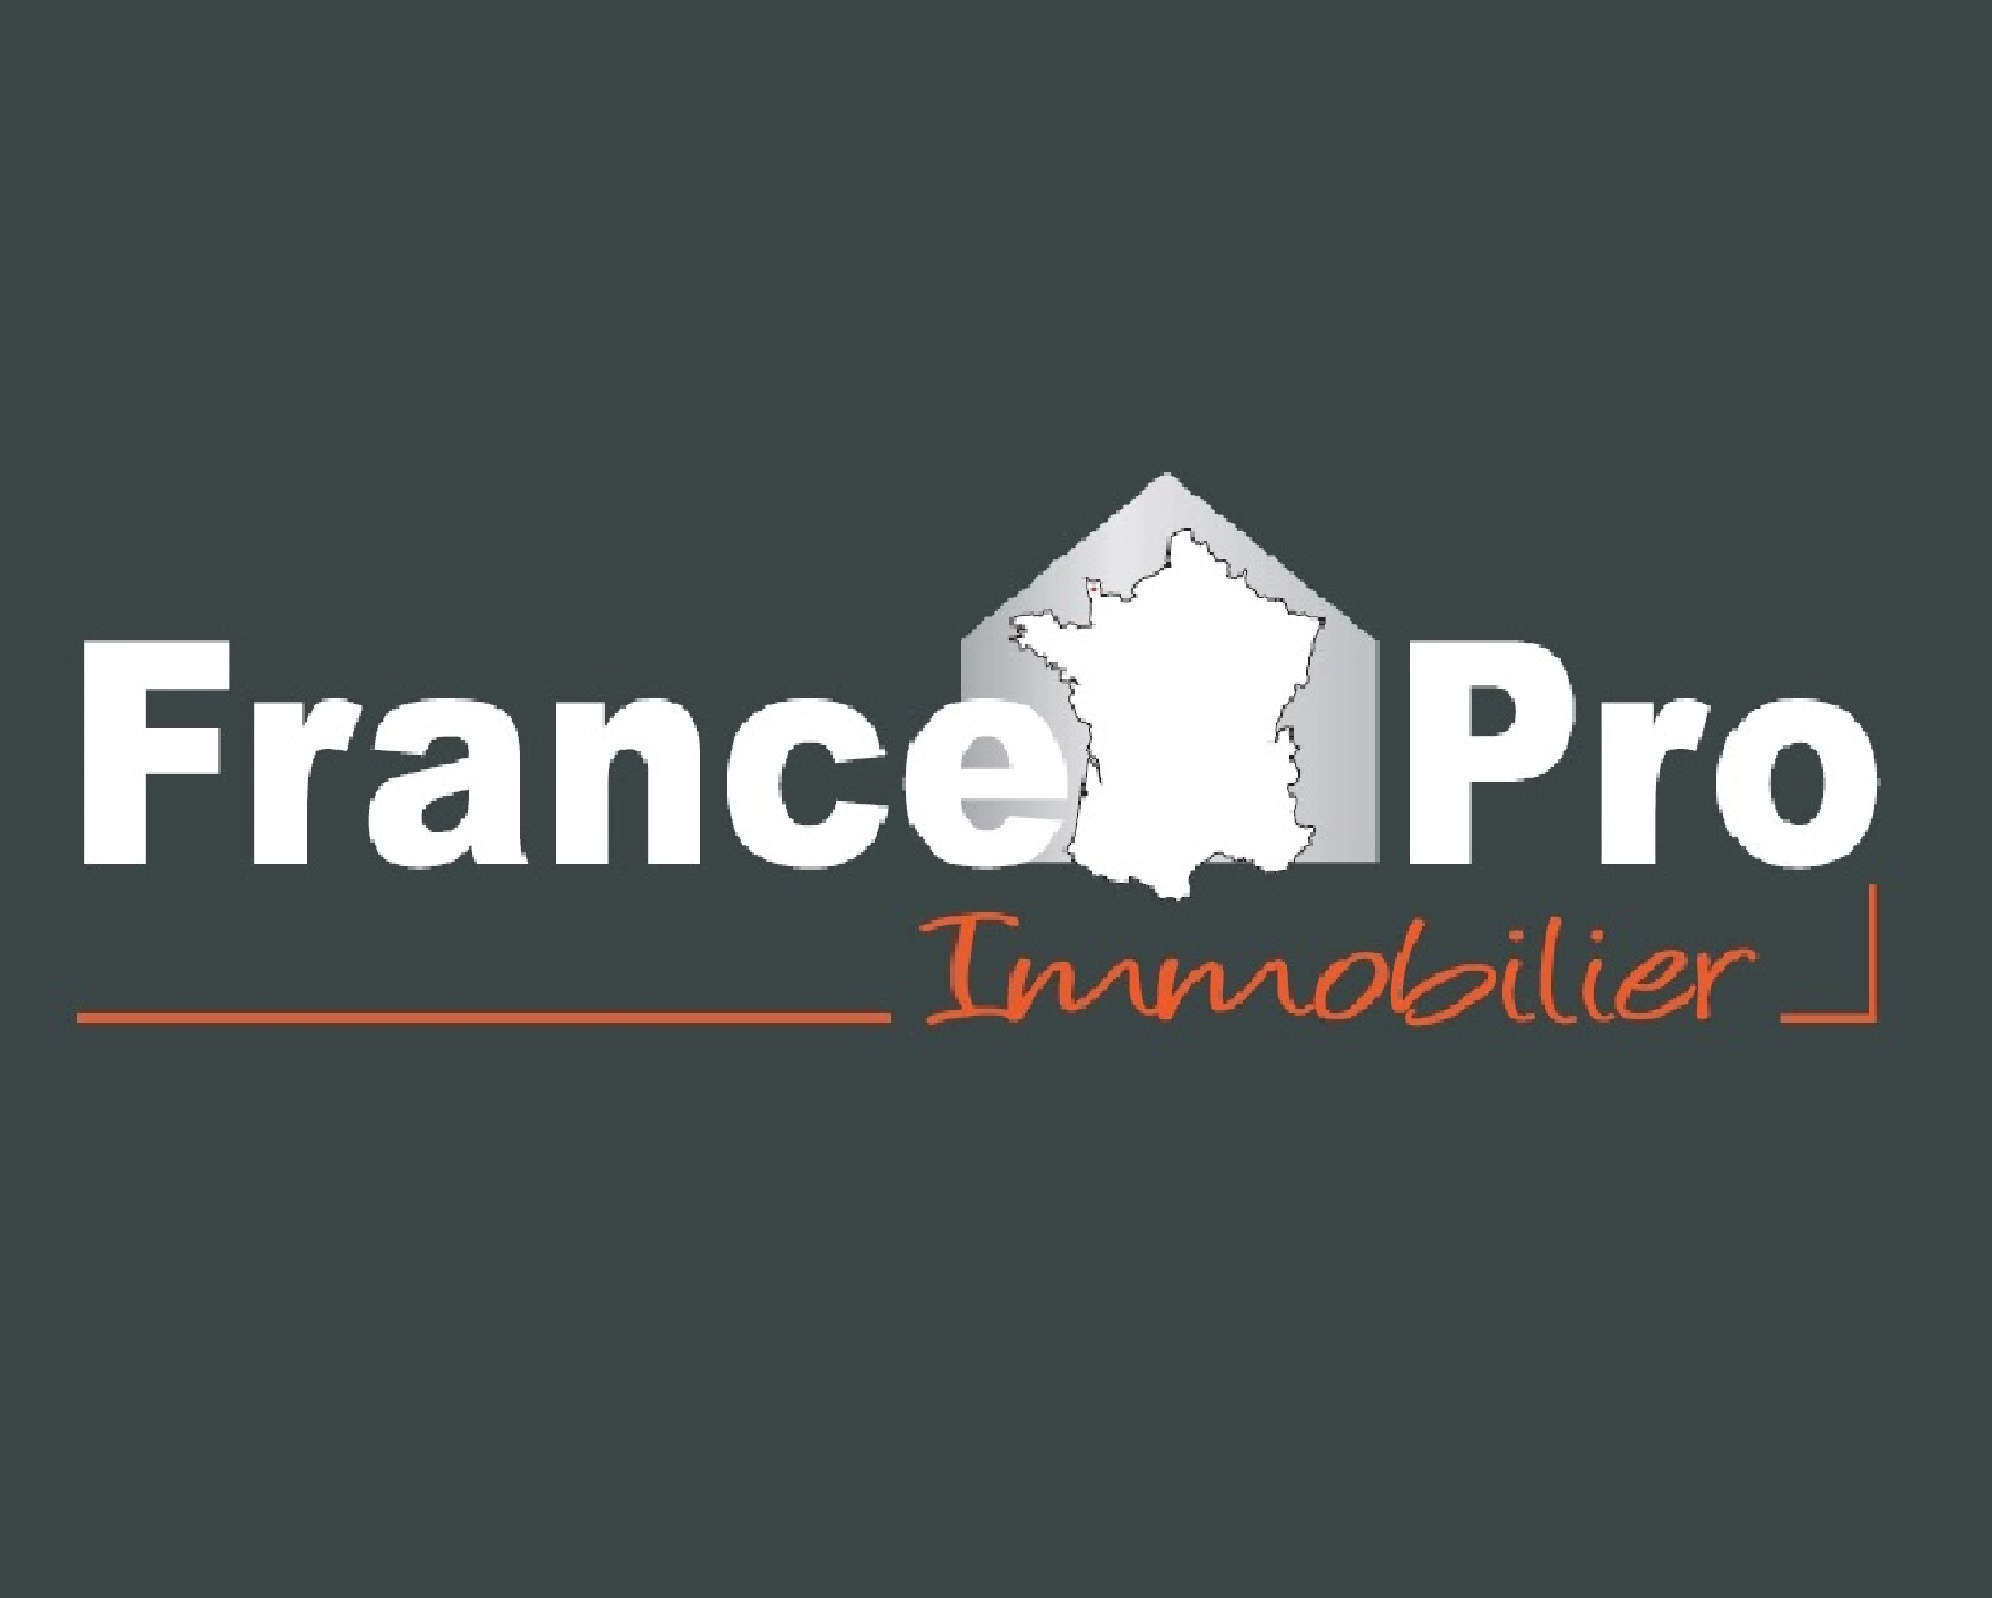 www.franceproimmobilier.comagence immobilière Cherbourg France Pro Immobilier tél : 02.33.01.50.34